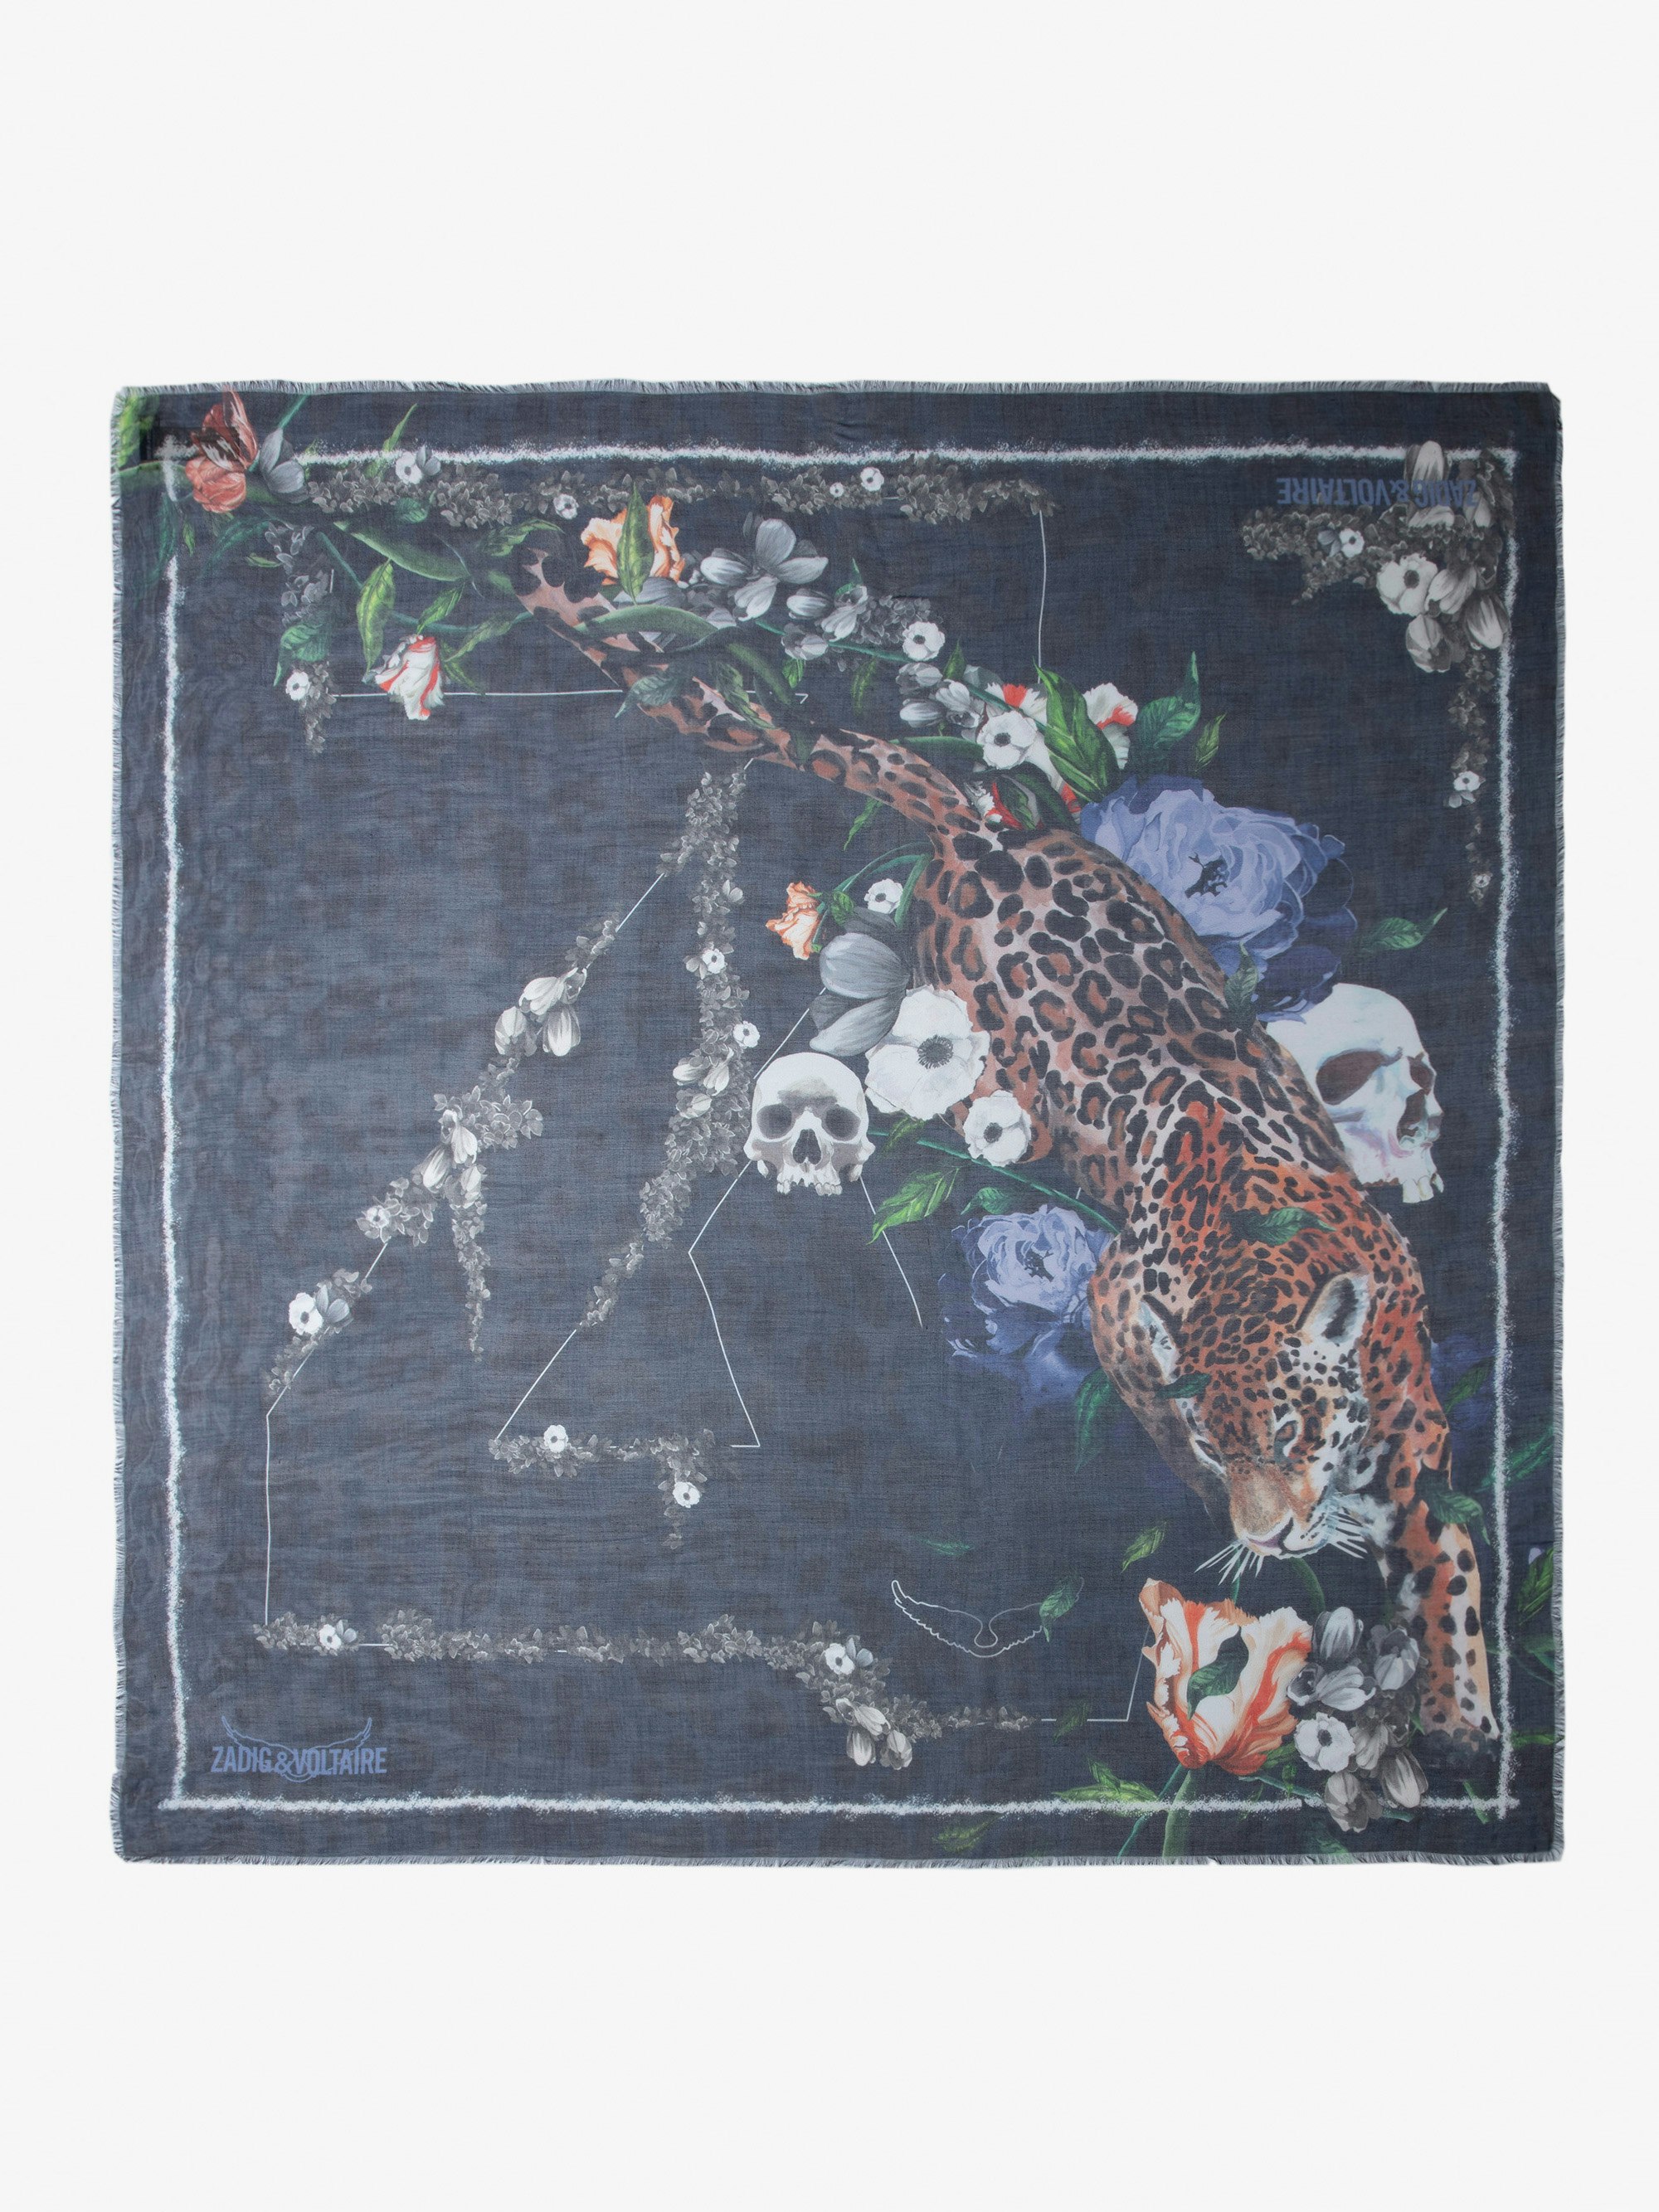 Pañuelo Kerry - Pañuelo azul marino con estampado salvaje con flores, calavera e inscripción ZV para mujer.